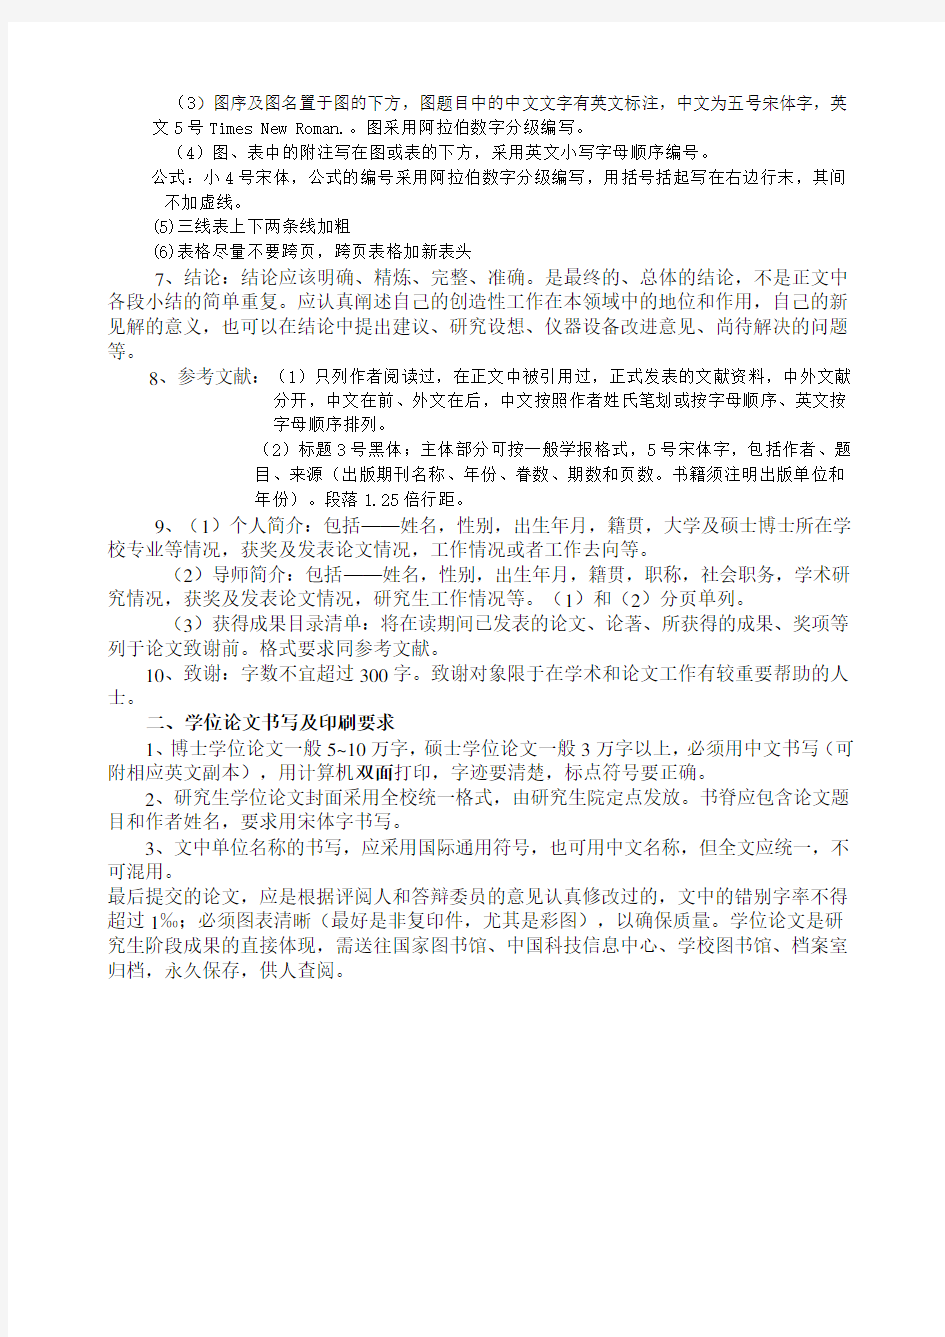 北京林业大学研究生学位论文格式要求